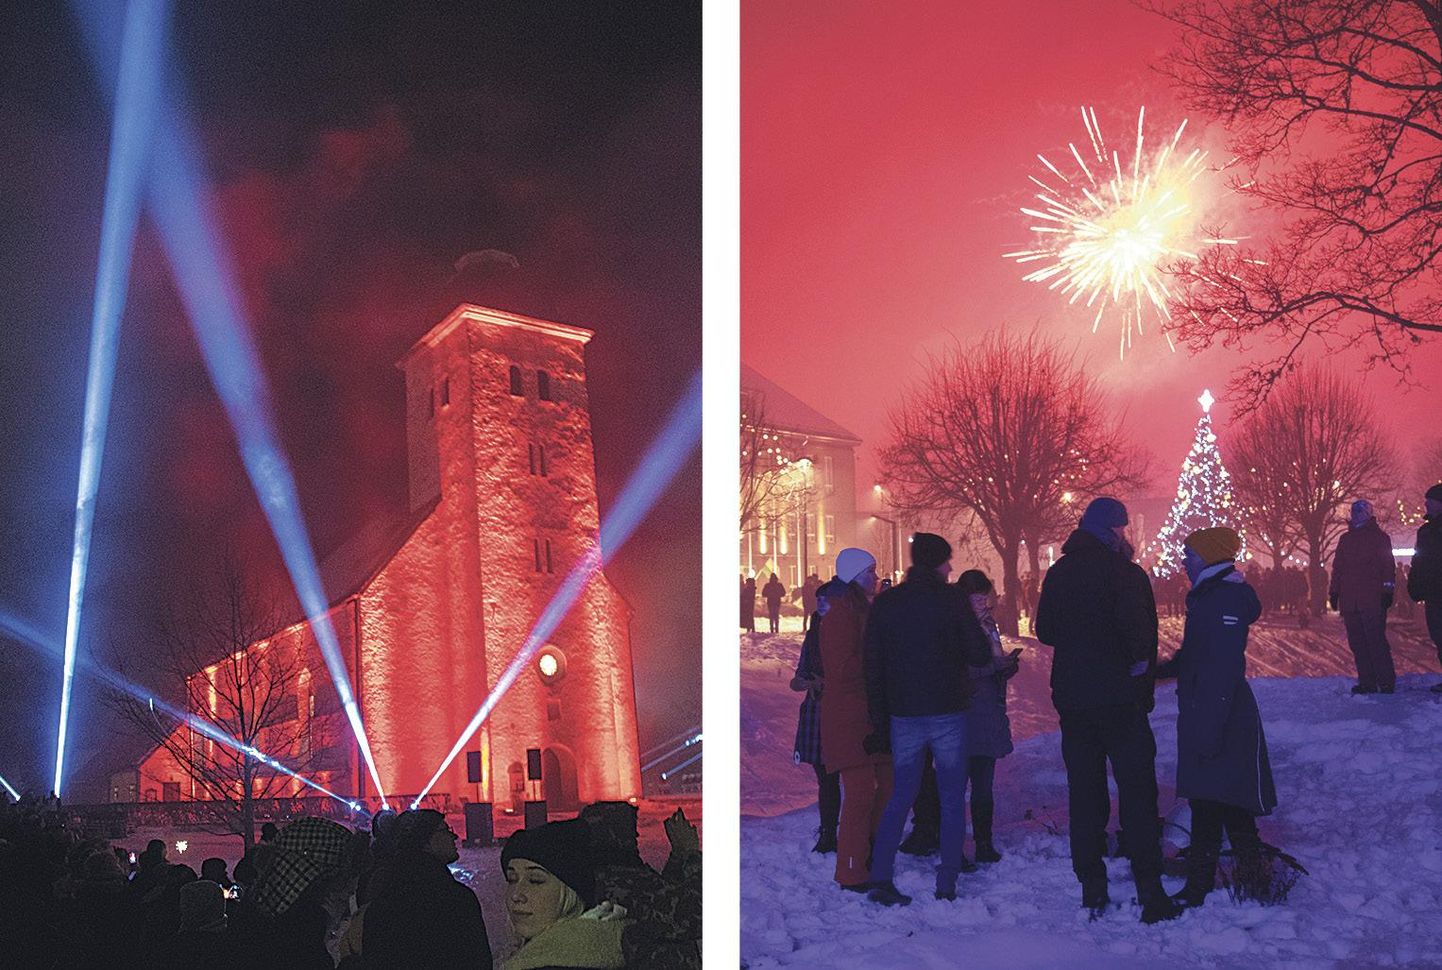 Möödunud aastal tähistati Viljandis aasta vahetumist traditsioonilise ilutulestiku asemel valgus- ja heliinstallatsiooniga «Wiljandi wirwalised». Kui ühel pool vaadati valgus-show’d, siis teisel pool, Vabaduse platsil, lasti omaalgatuslikult rakette.